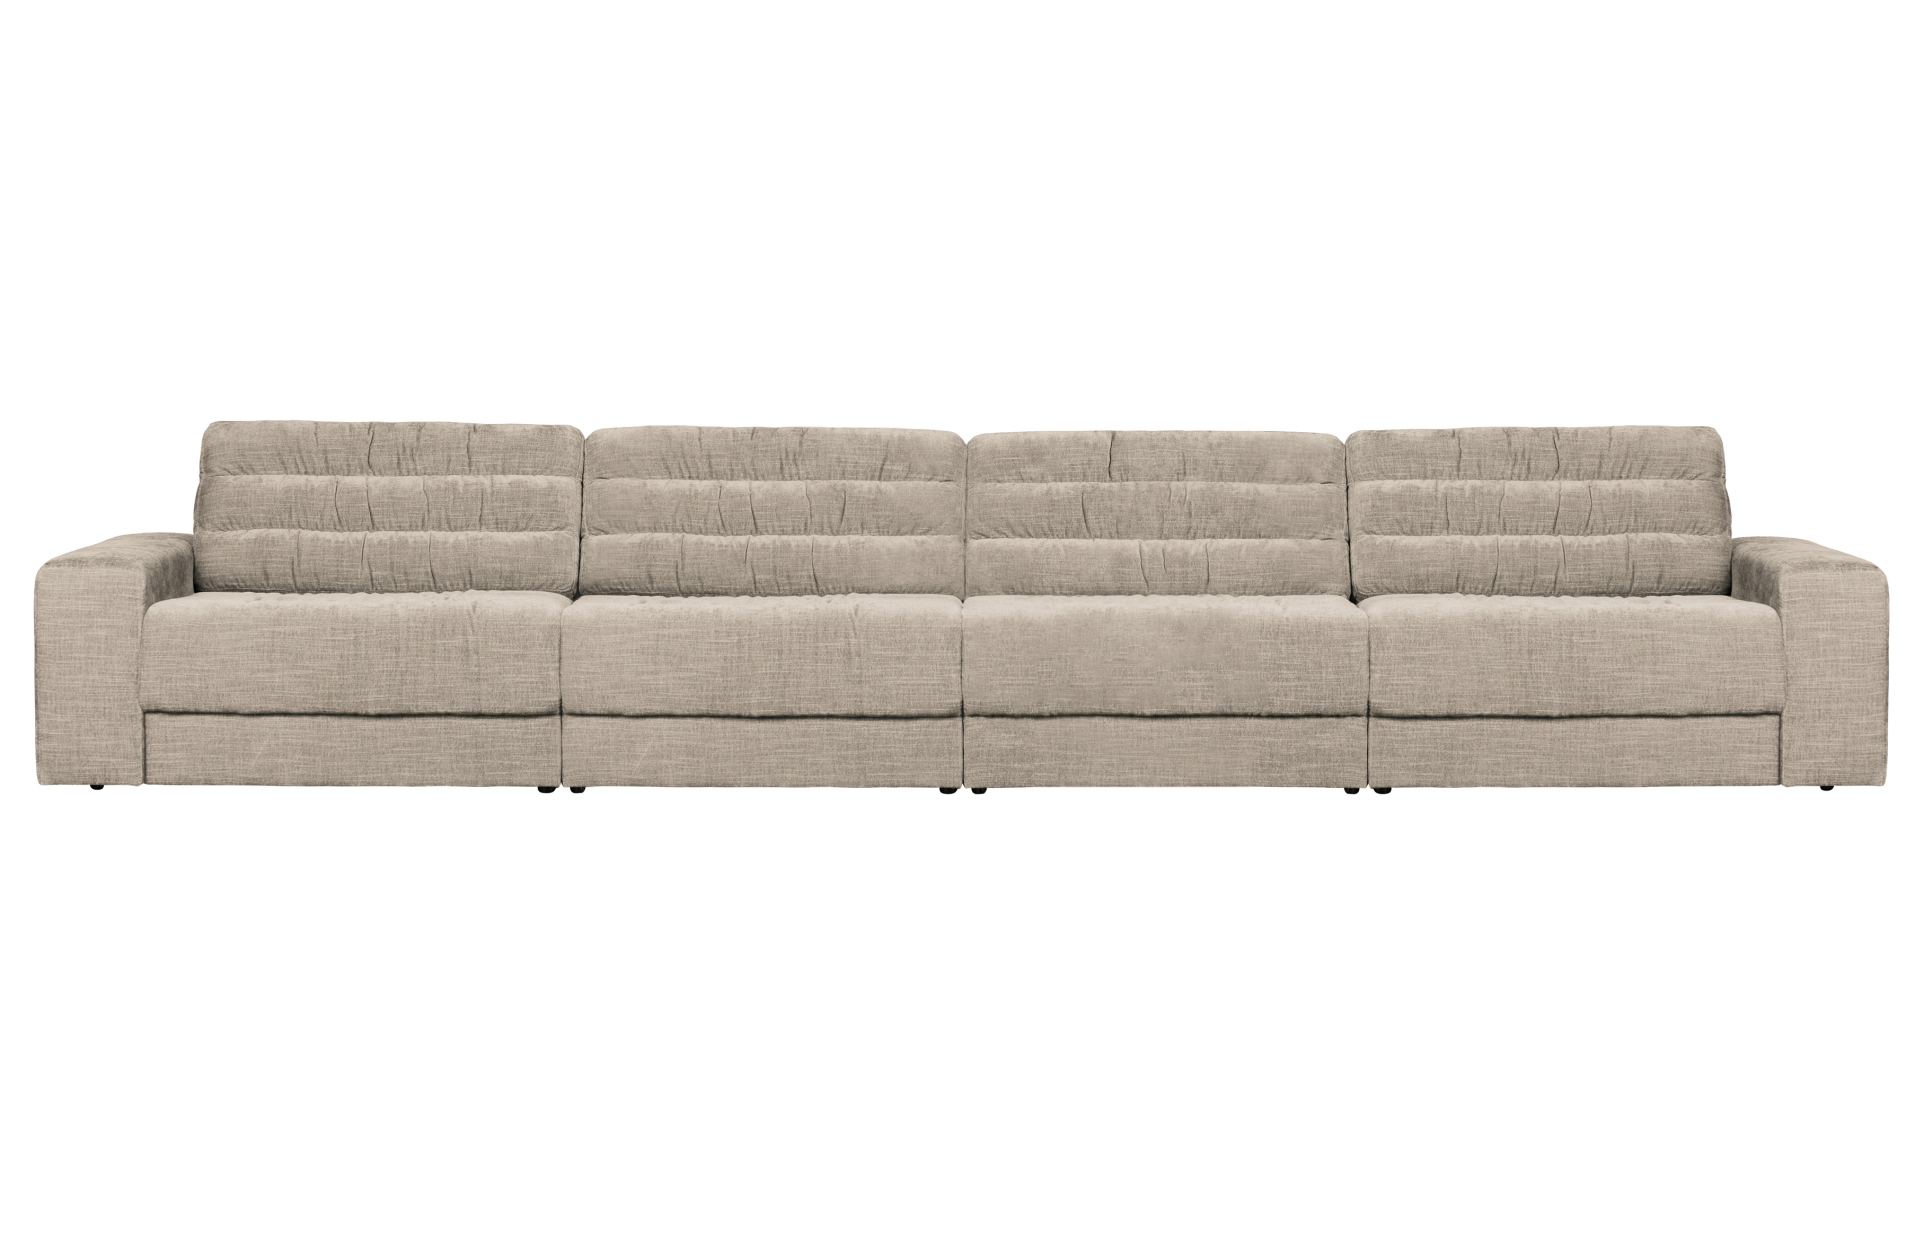 Das Sofa Date überzeugt mit seinem klassischen Design. Gefertigt wurde es aus einem Vintage Stoff, welcher einen Nougat Farbton besitzen. Das Gestell ist aus Kunststoff und hat eine schwarze Farbe. Das Sofa hat eine Breite von 406 cm.